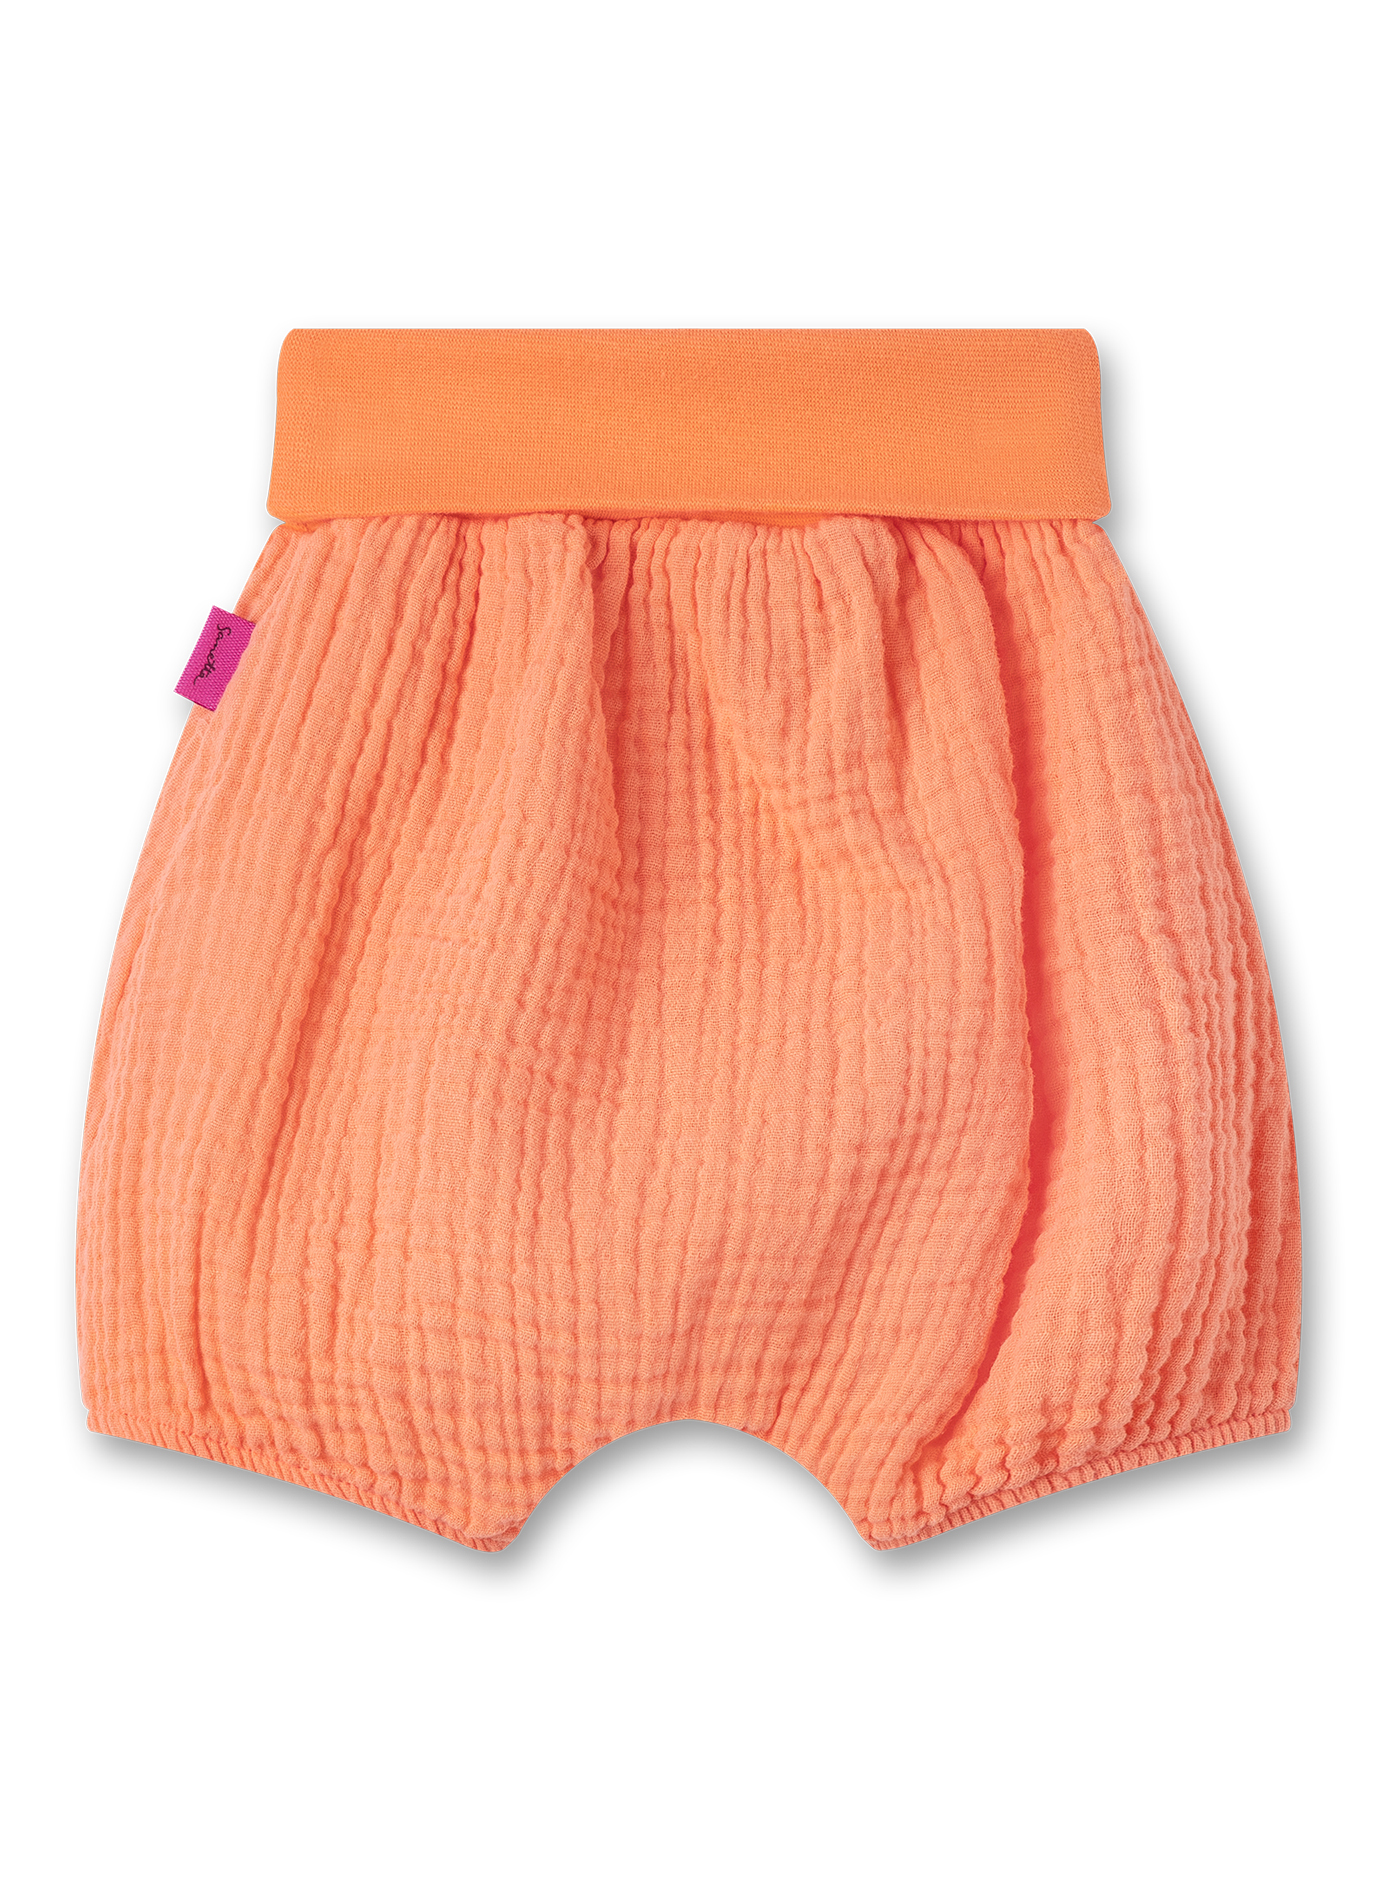 Mädchen-Shorts aus Musselin Orange